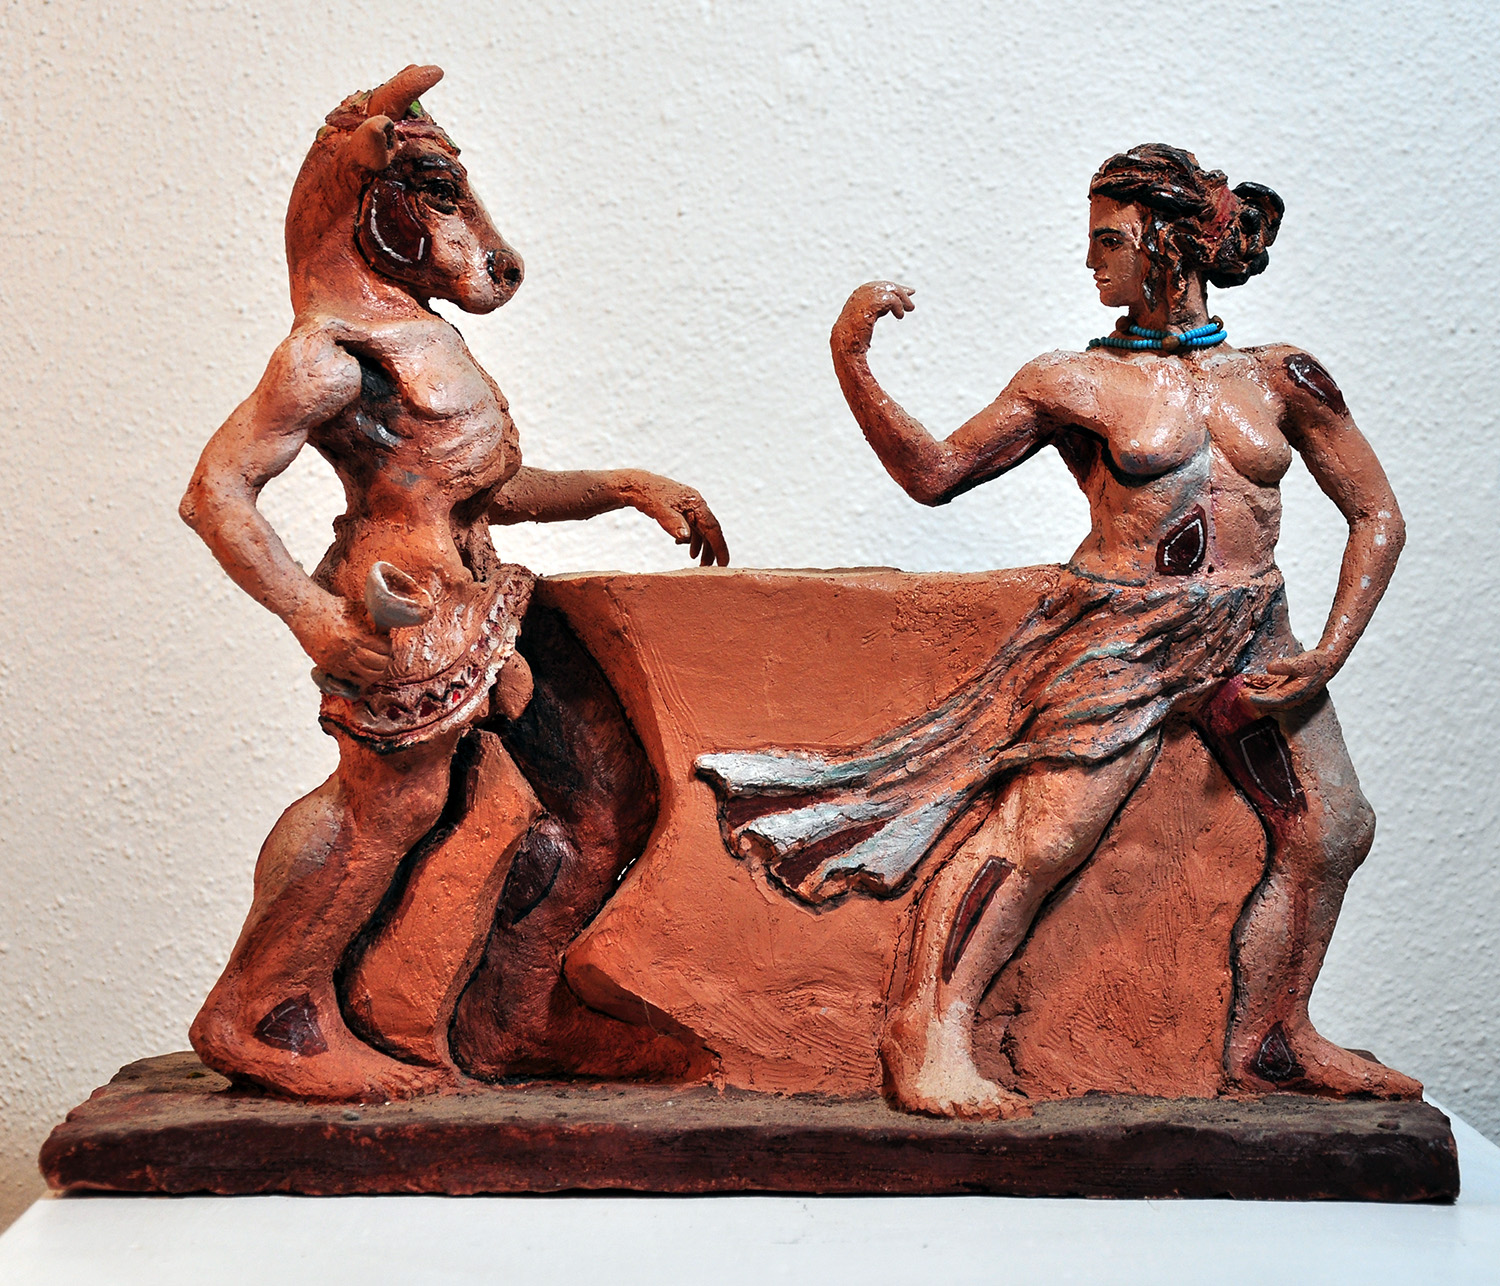 Dancing Woman and Minotaur